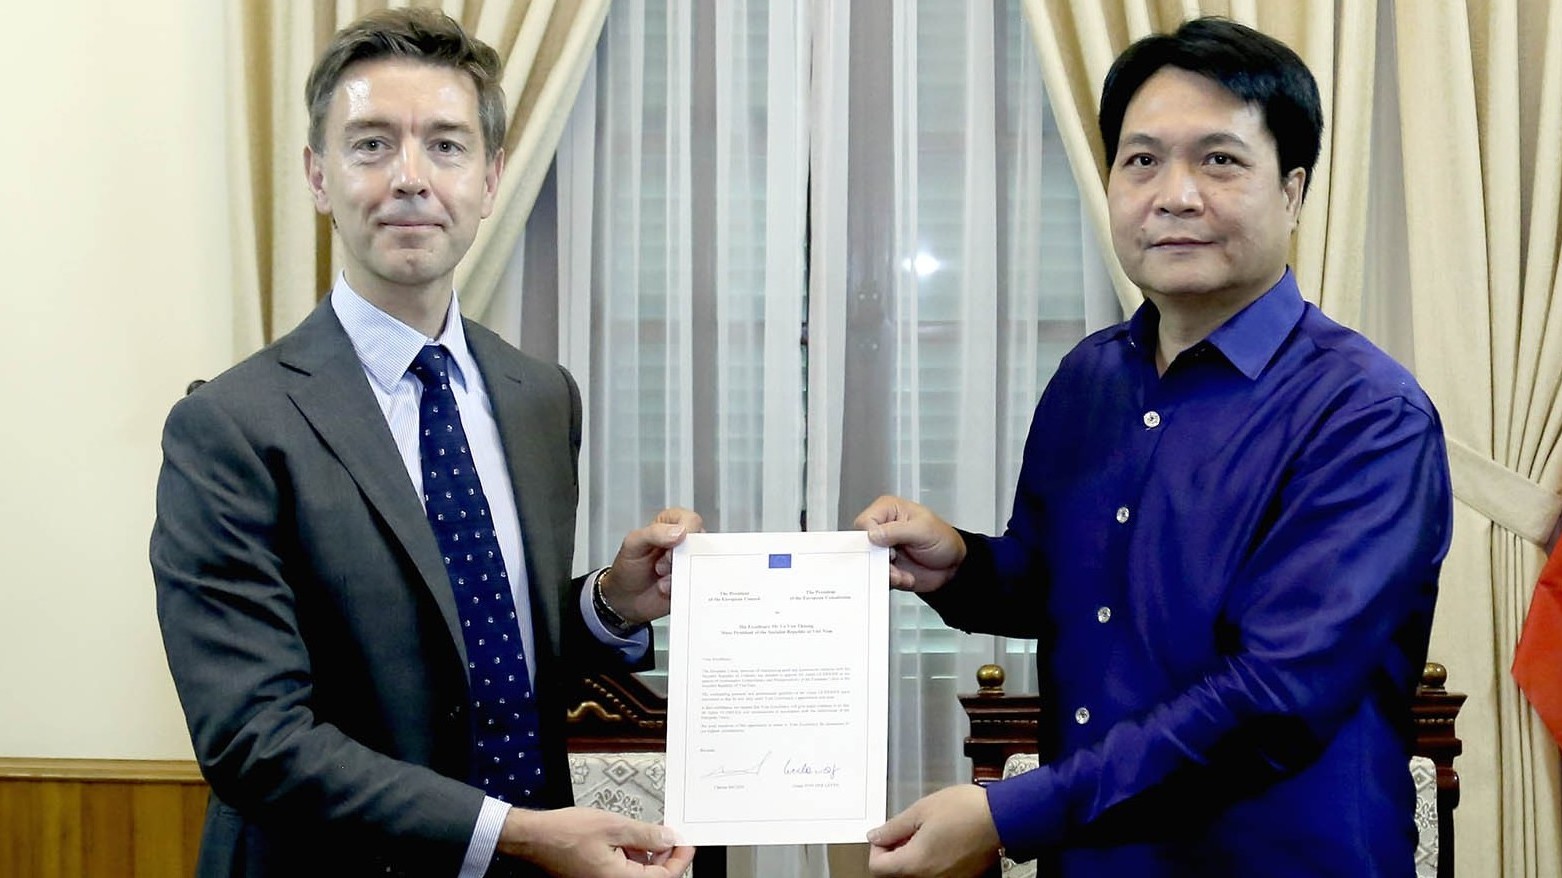 Bộ Ngoại giao tiếp nhận bản sao Thư ủy nhiệm bổ nhiệm Đại sứ EU tại Việt Nam